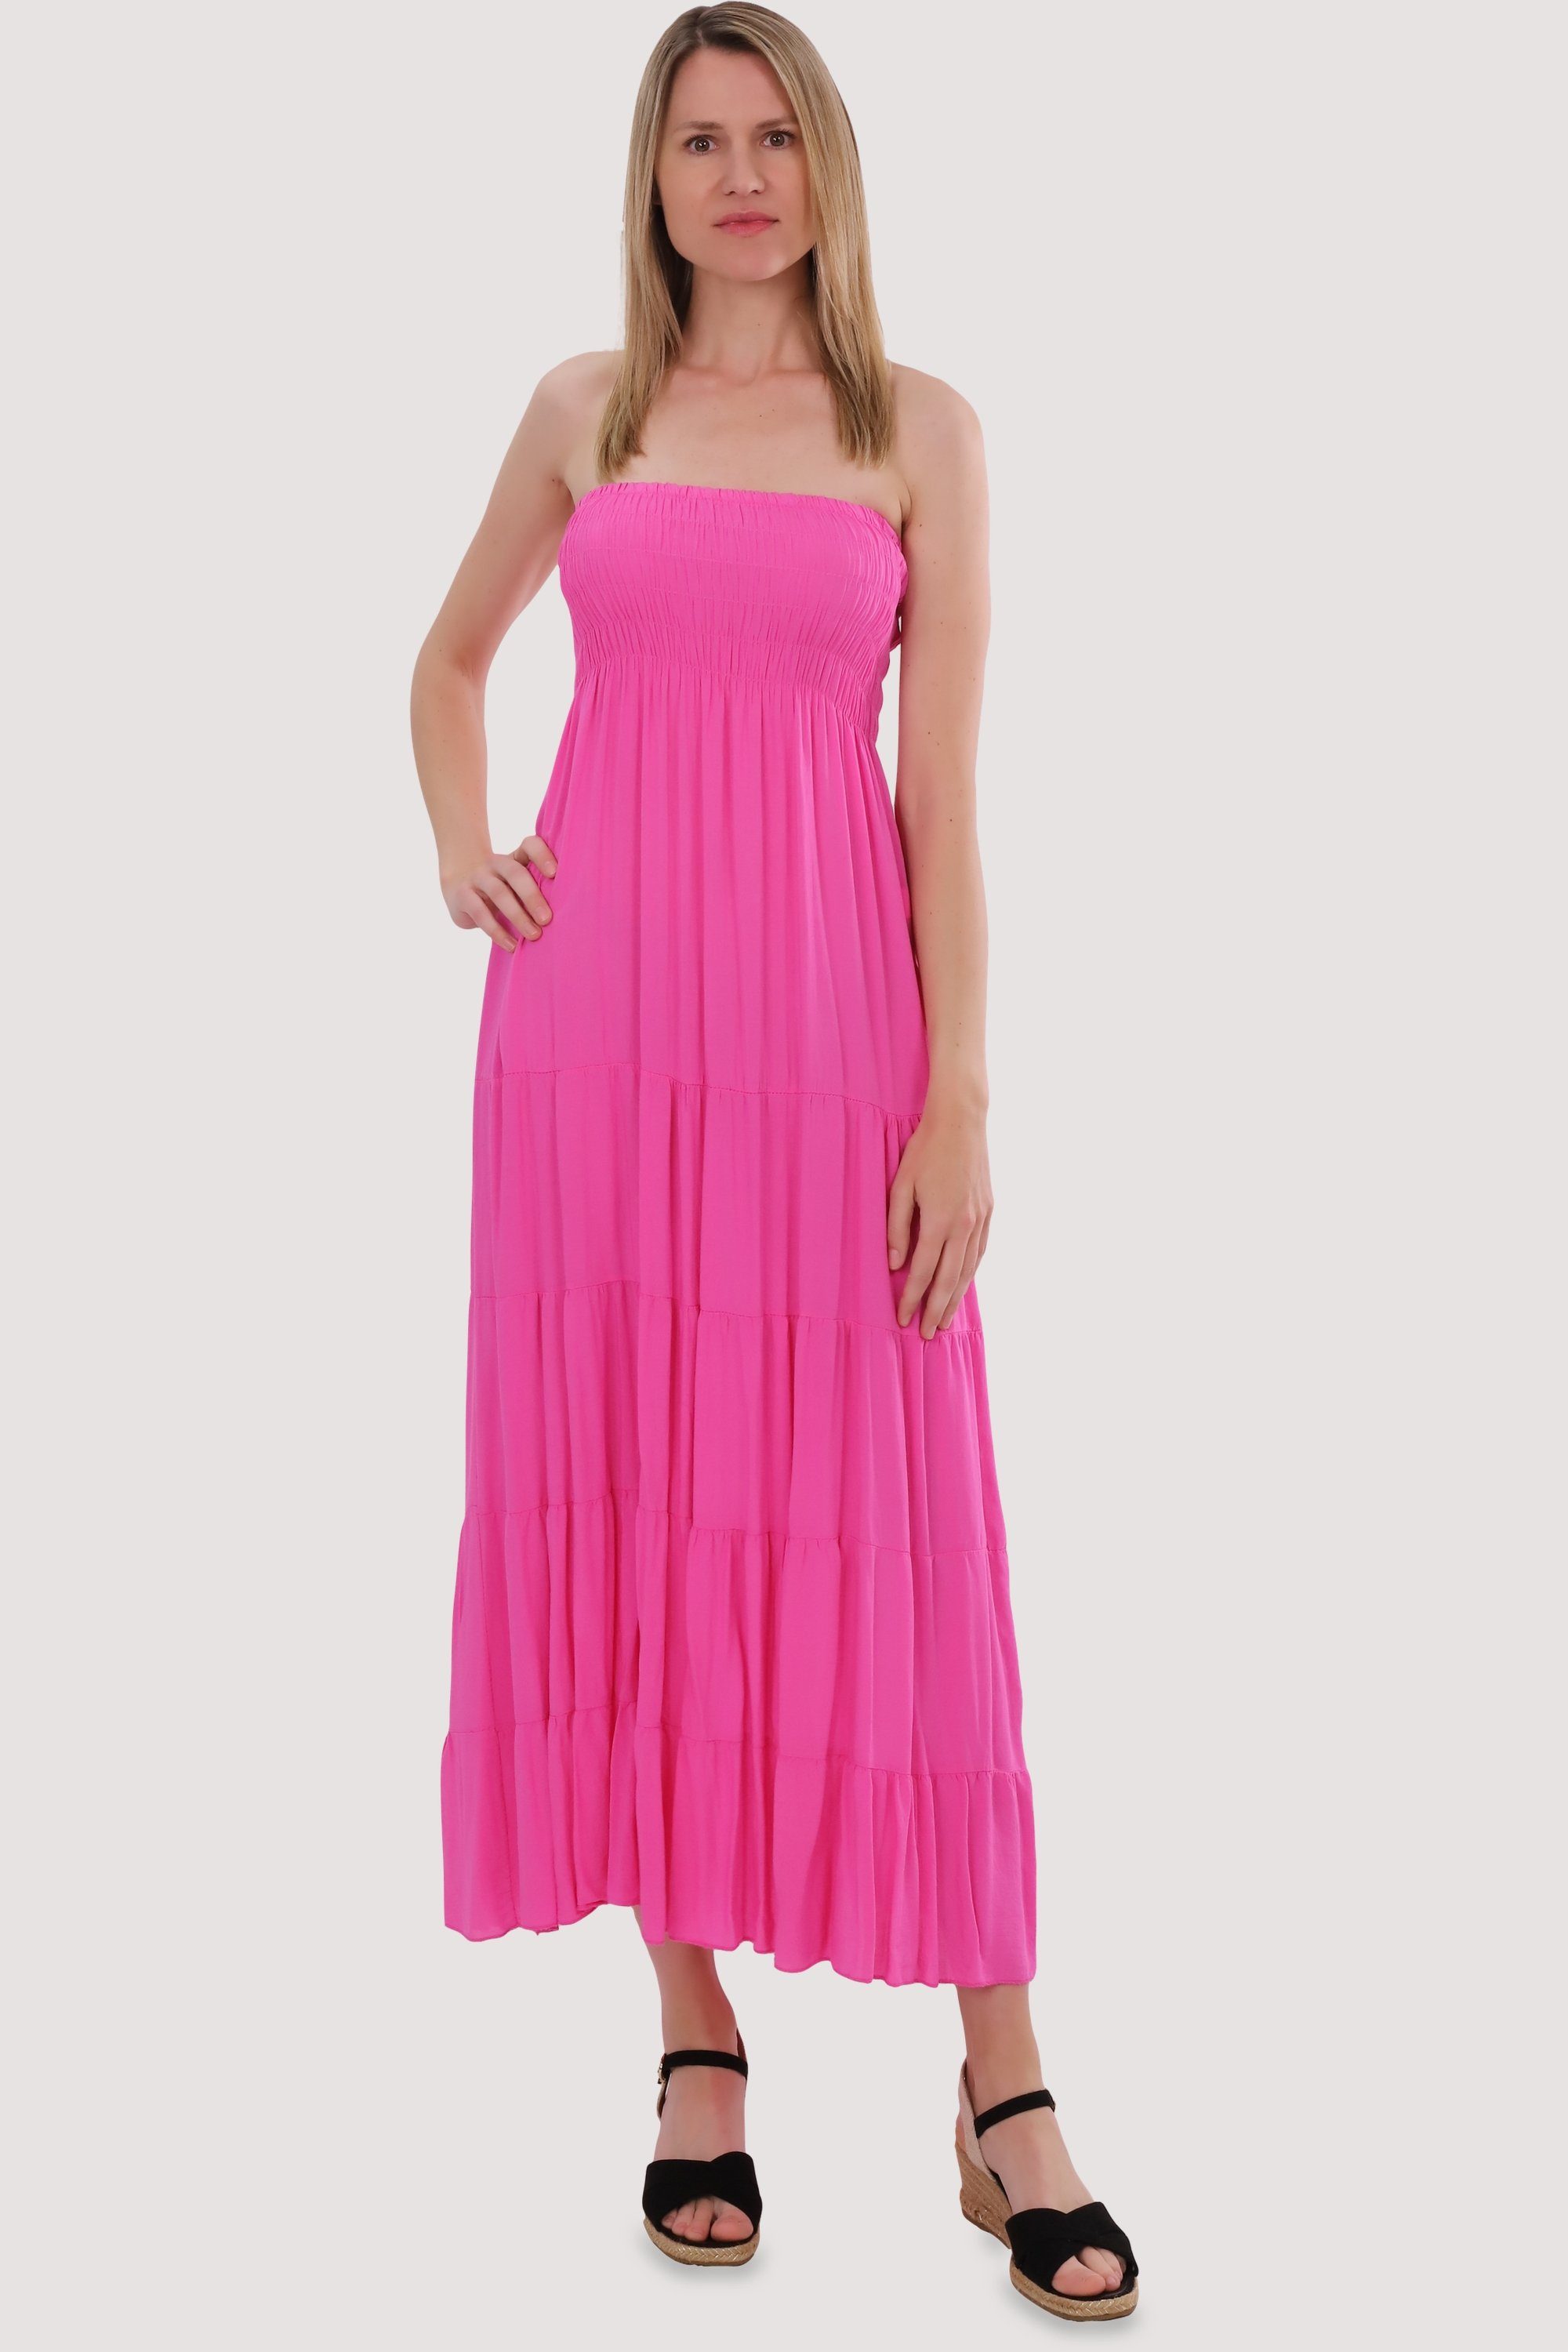 malito more than fashion Bandeaukleid 4635 Einheitsgröße figurumspielendes Sommerkleid rosa Strandkleid